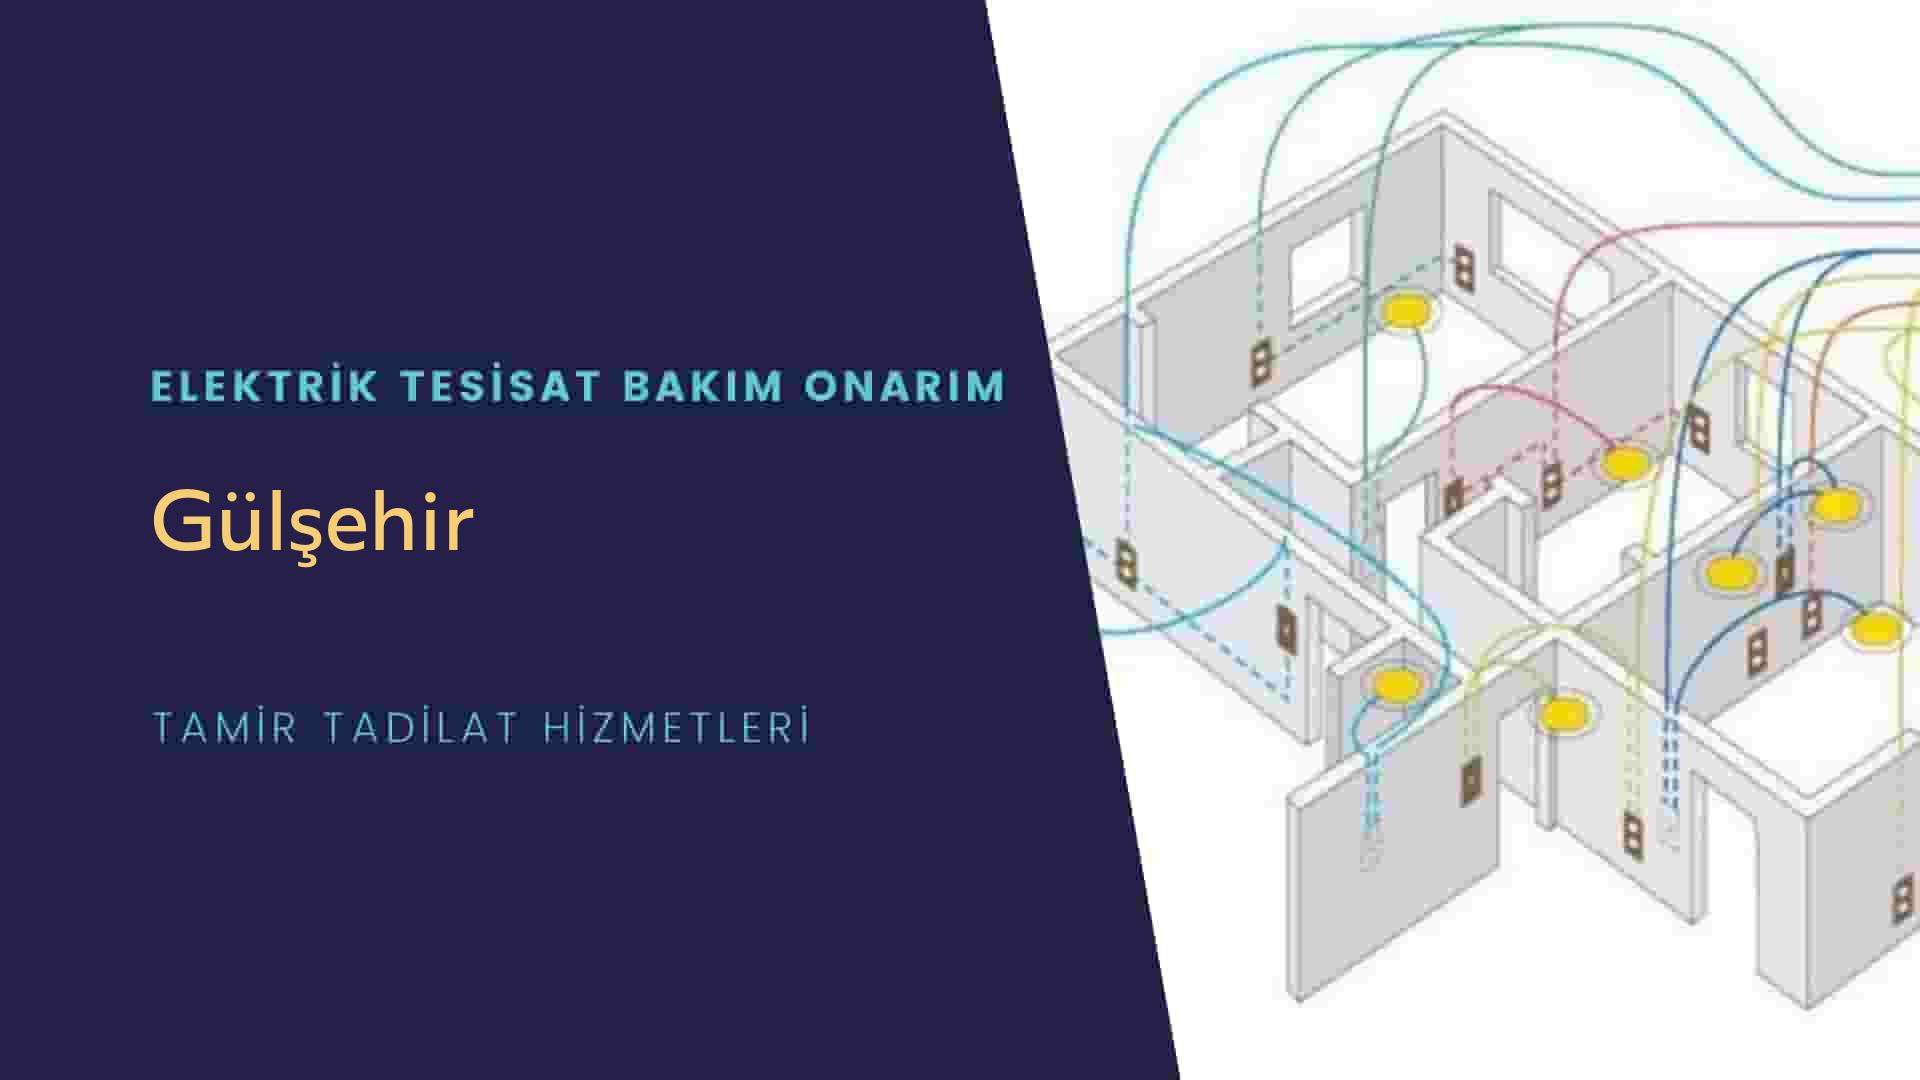 Gülşehir'de elektrik tesisatı ustalarımı arıyorsunuz doğru adrestenizi Gülşehir elektrik tesisatı ustalarımız 7/24 sizlere hizmet vermekten mutluluk duyar.